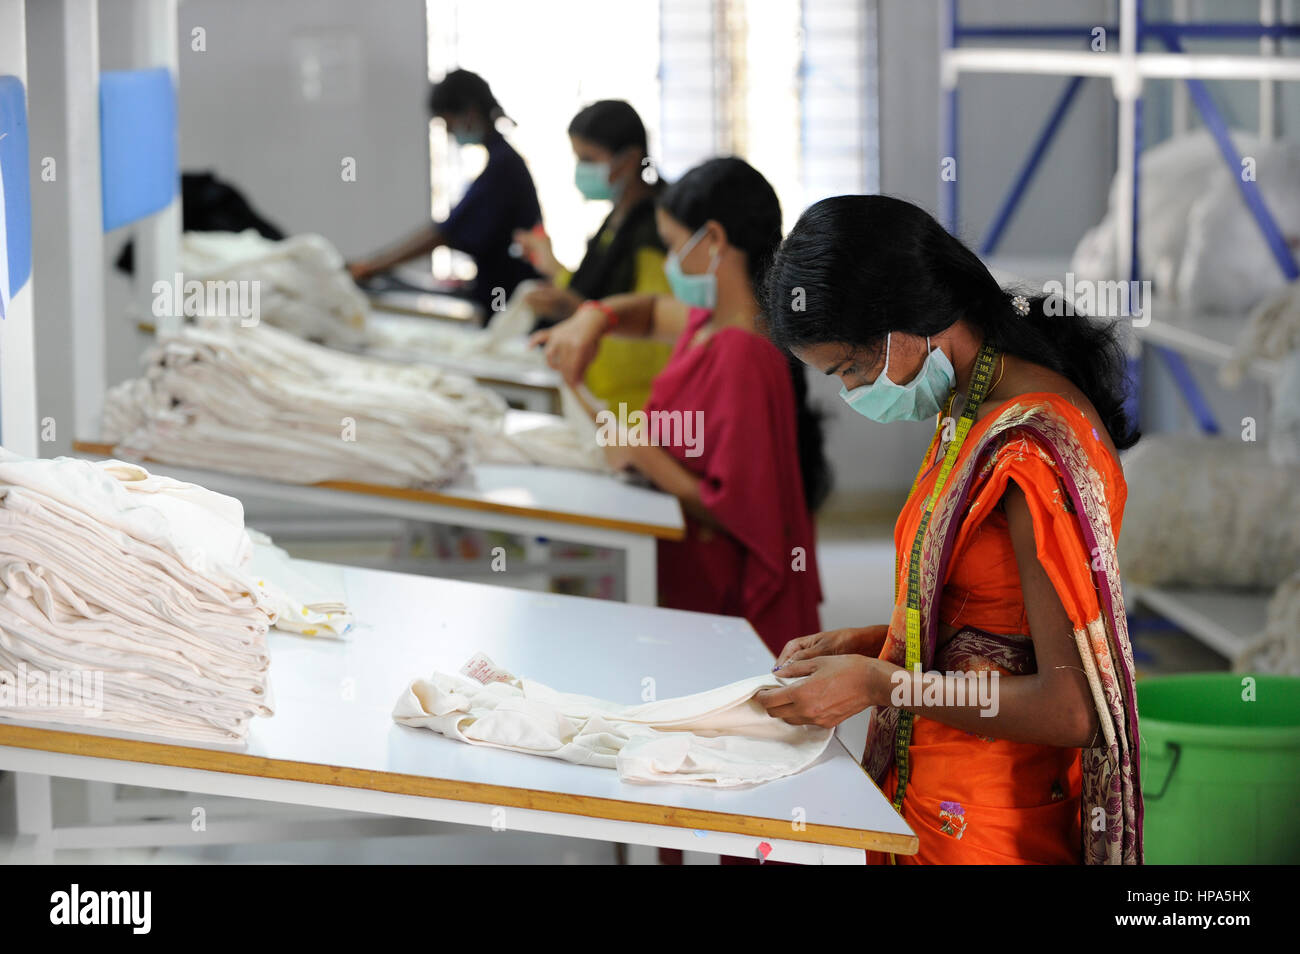 Indien Tirupur, fairer Handel Textil- einheiten, Assisi Kleider produziert  Bio und Fairtrade Bekleidung für Export - Bekleidung Kleidung Kleidung  Stockfotografie - Alamy